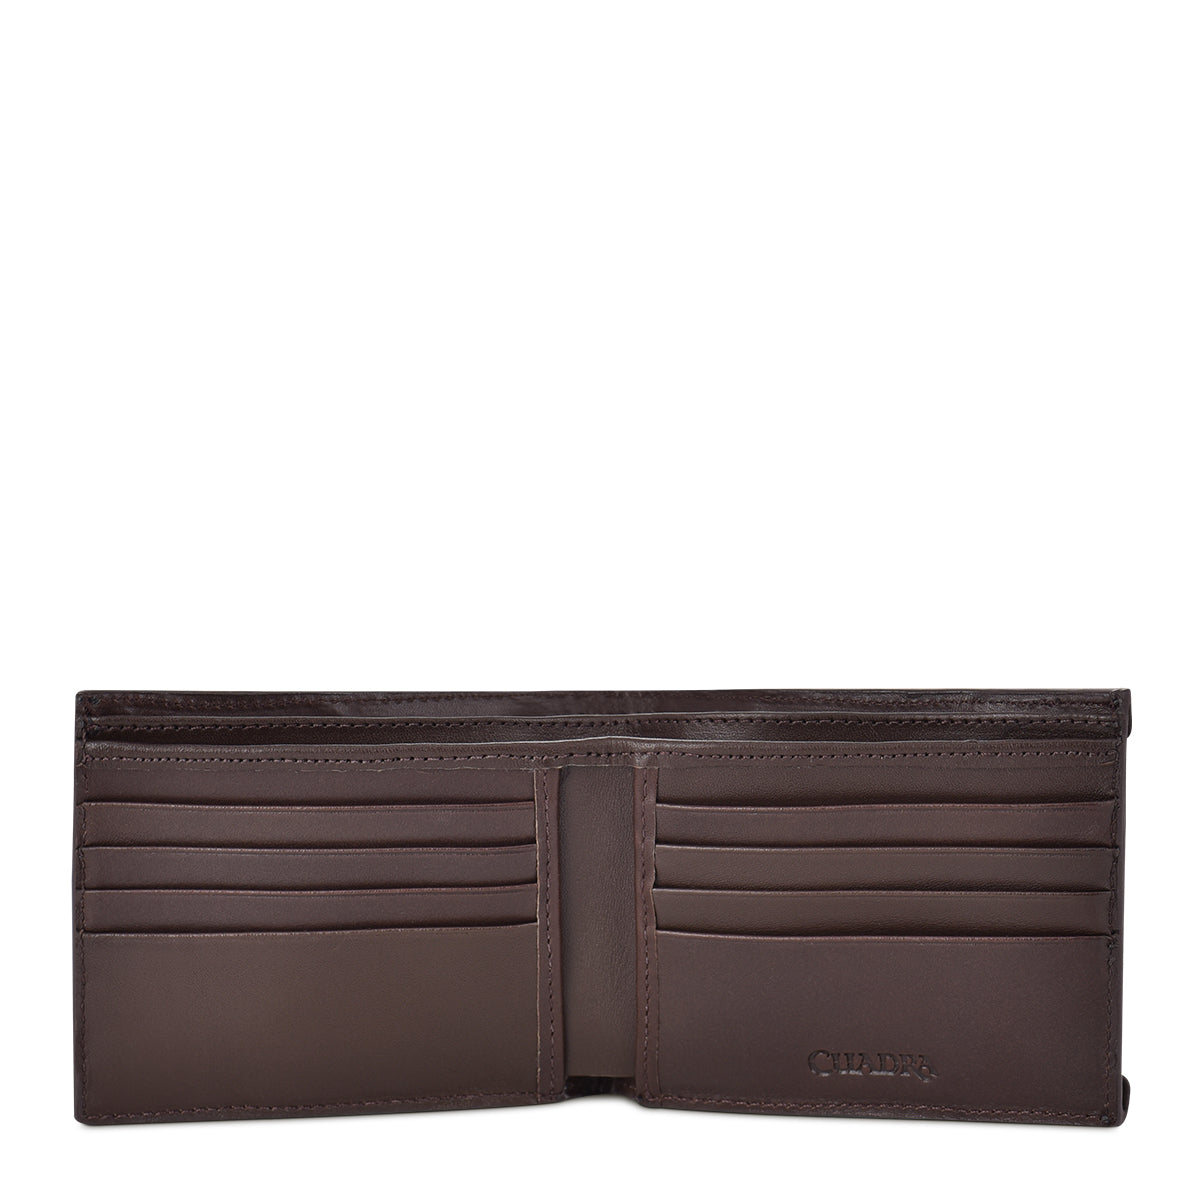 Handmade Cuadra monogram brown leather book wallet